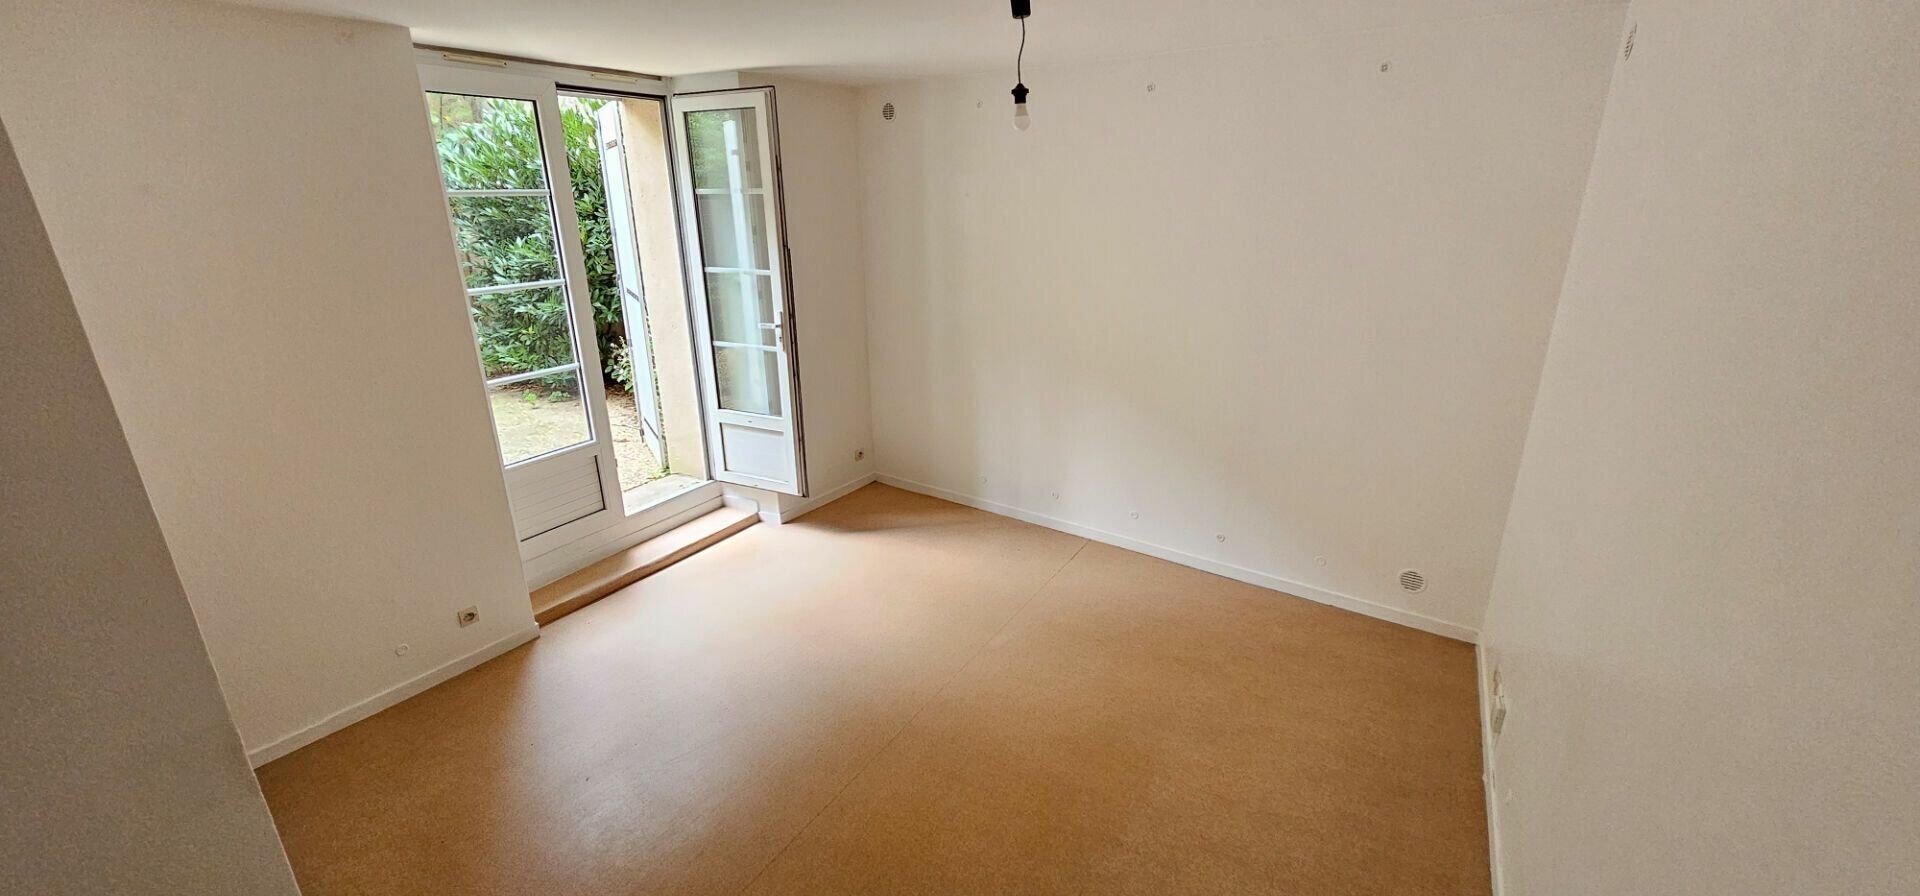 Appartement à vendre 2 71.31m2 à Poitiers vignette-2